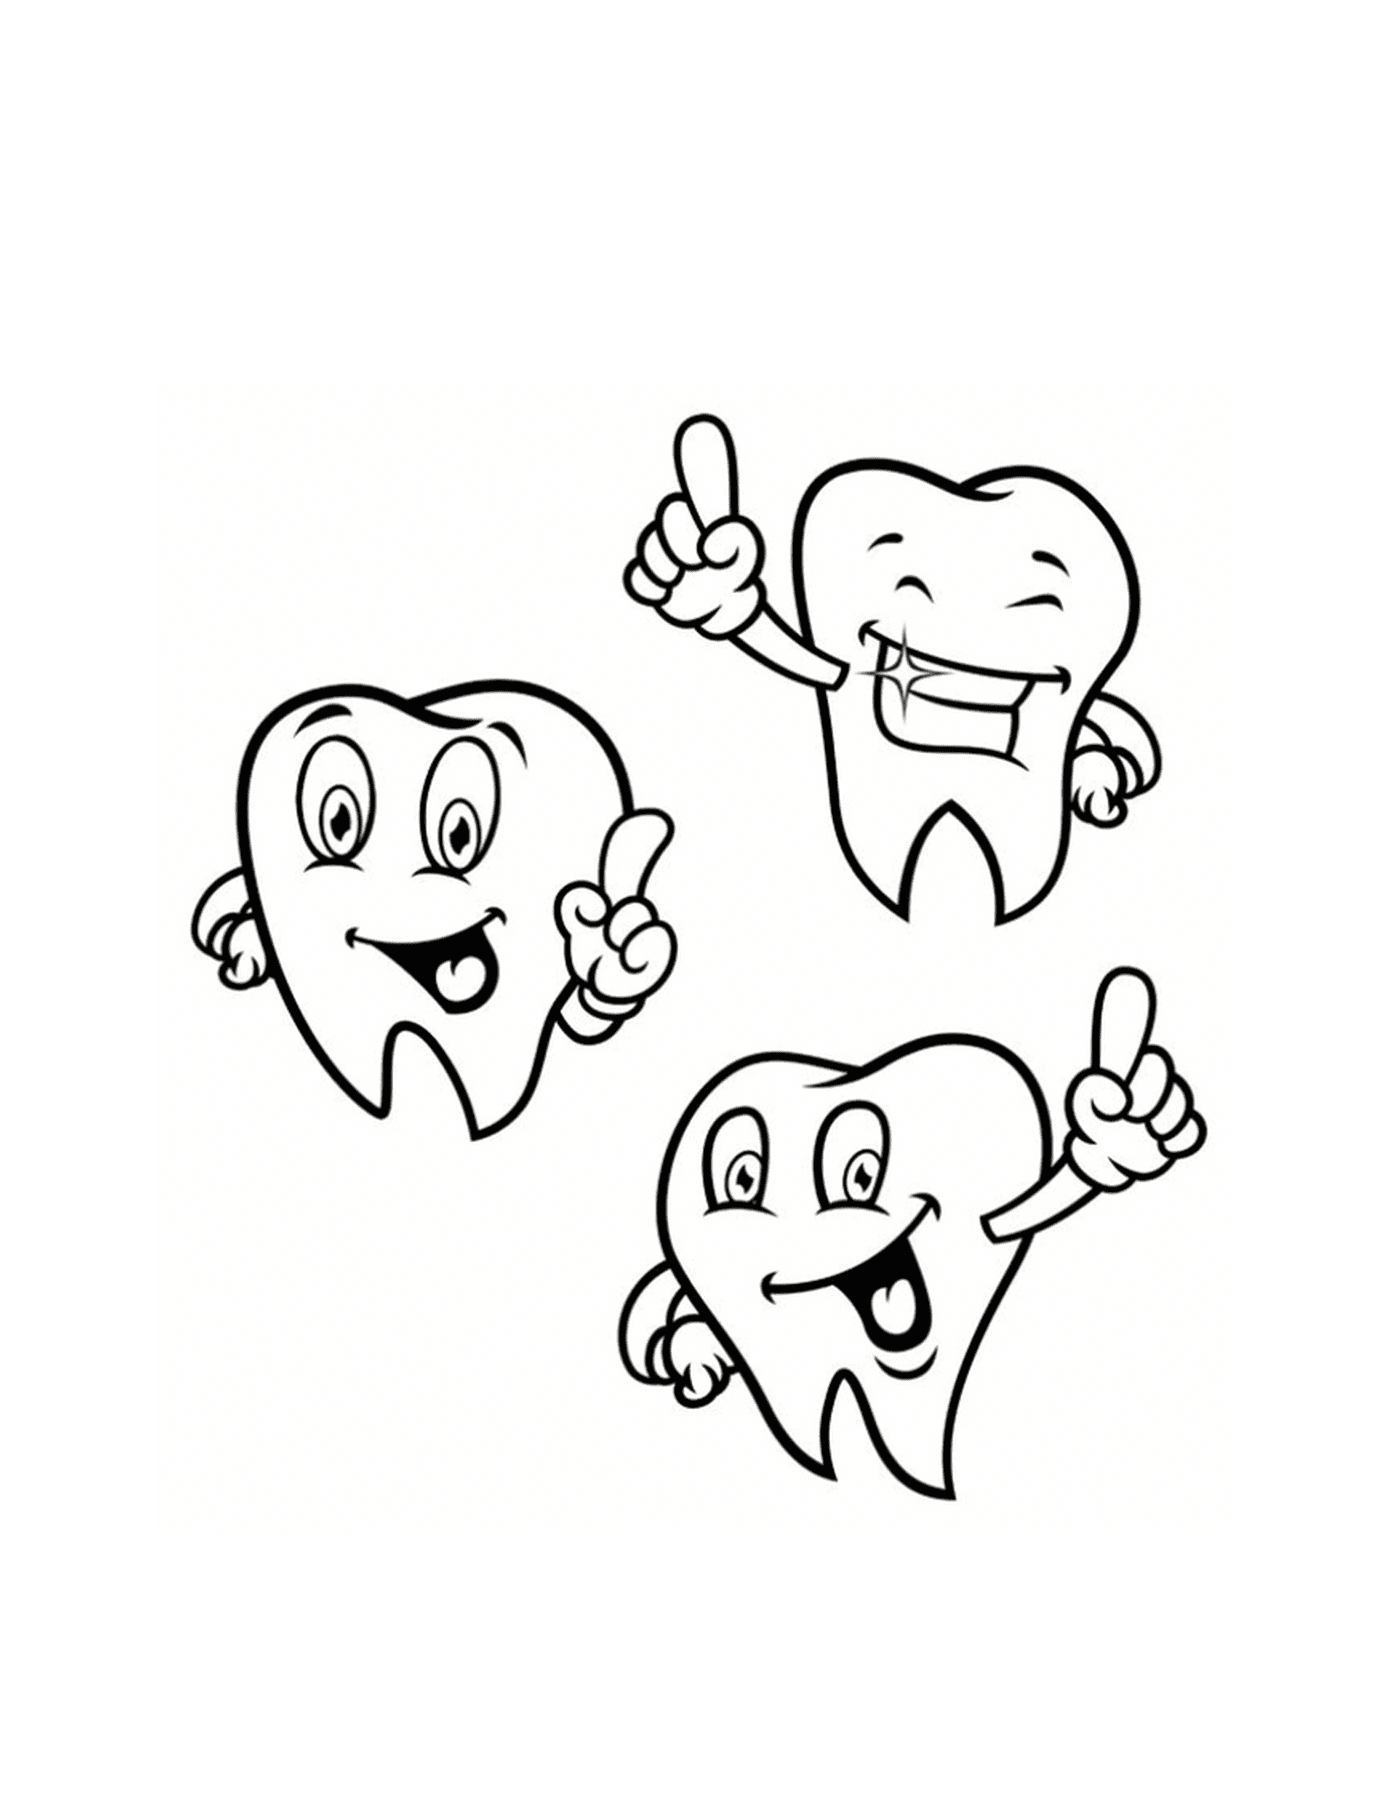  Три красивых зуба с поднятым большим пальцем 